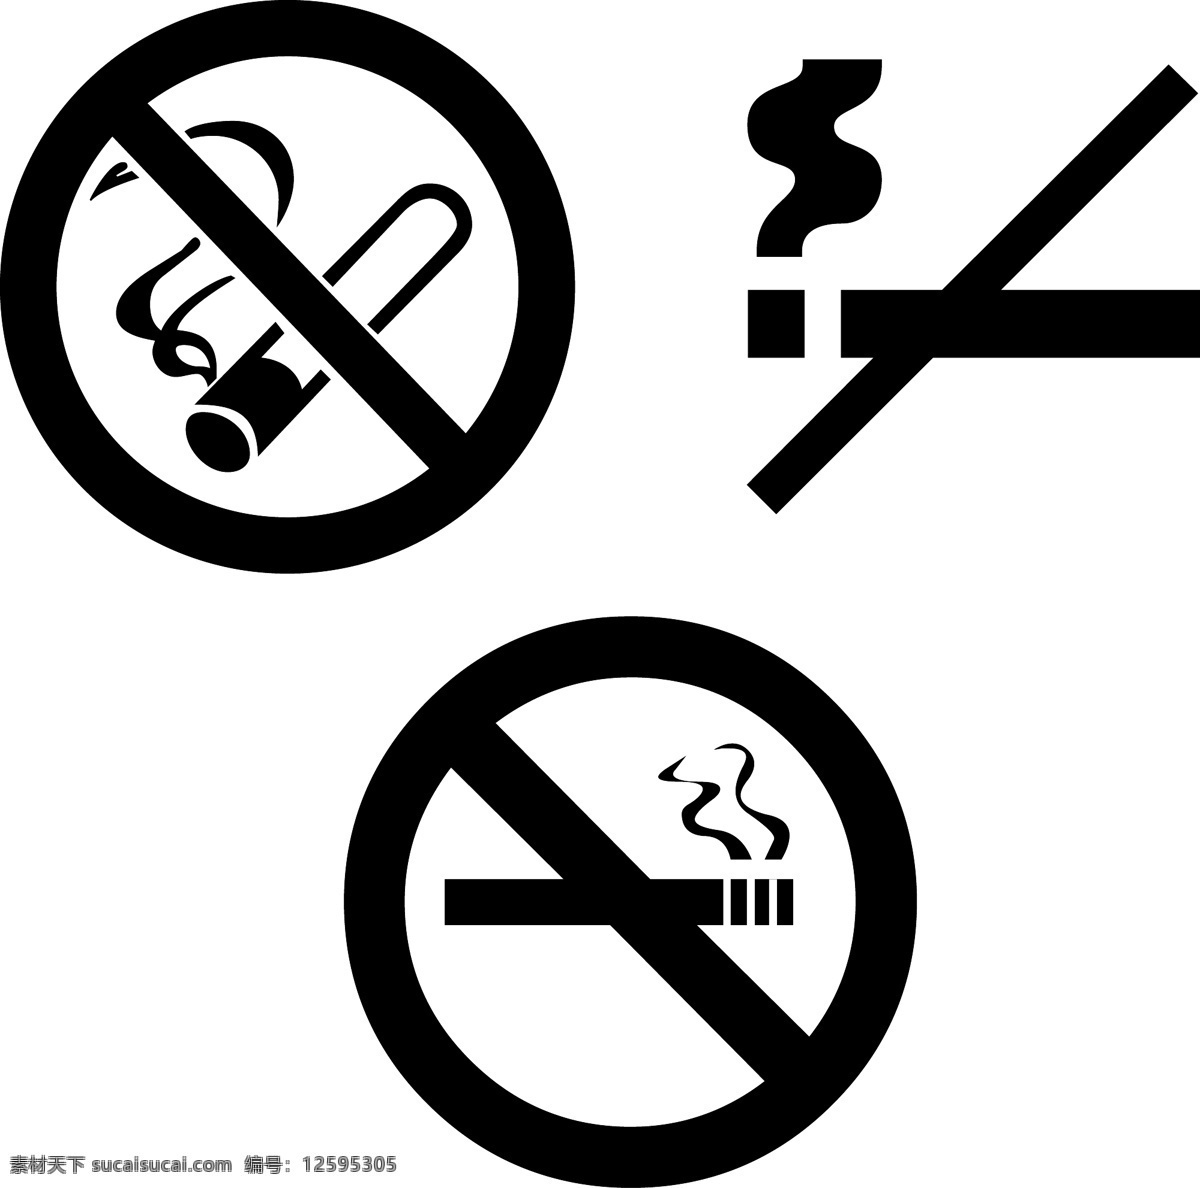 禁止吸烟标志 禁止吸烟 吸烟 标志 标识标志图标 公共标识标志 标志公共类 矢量图库